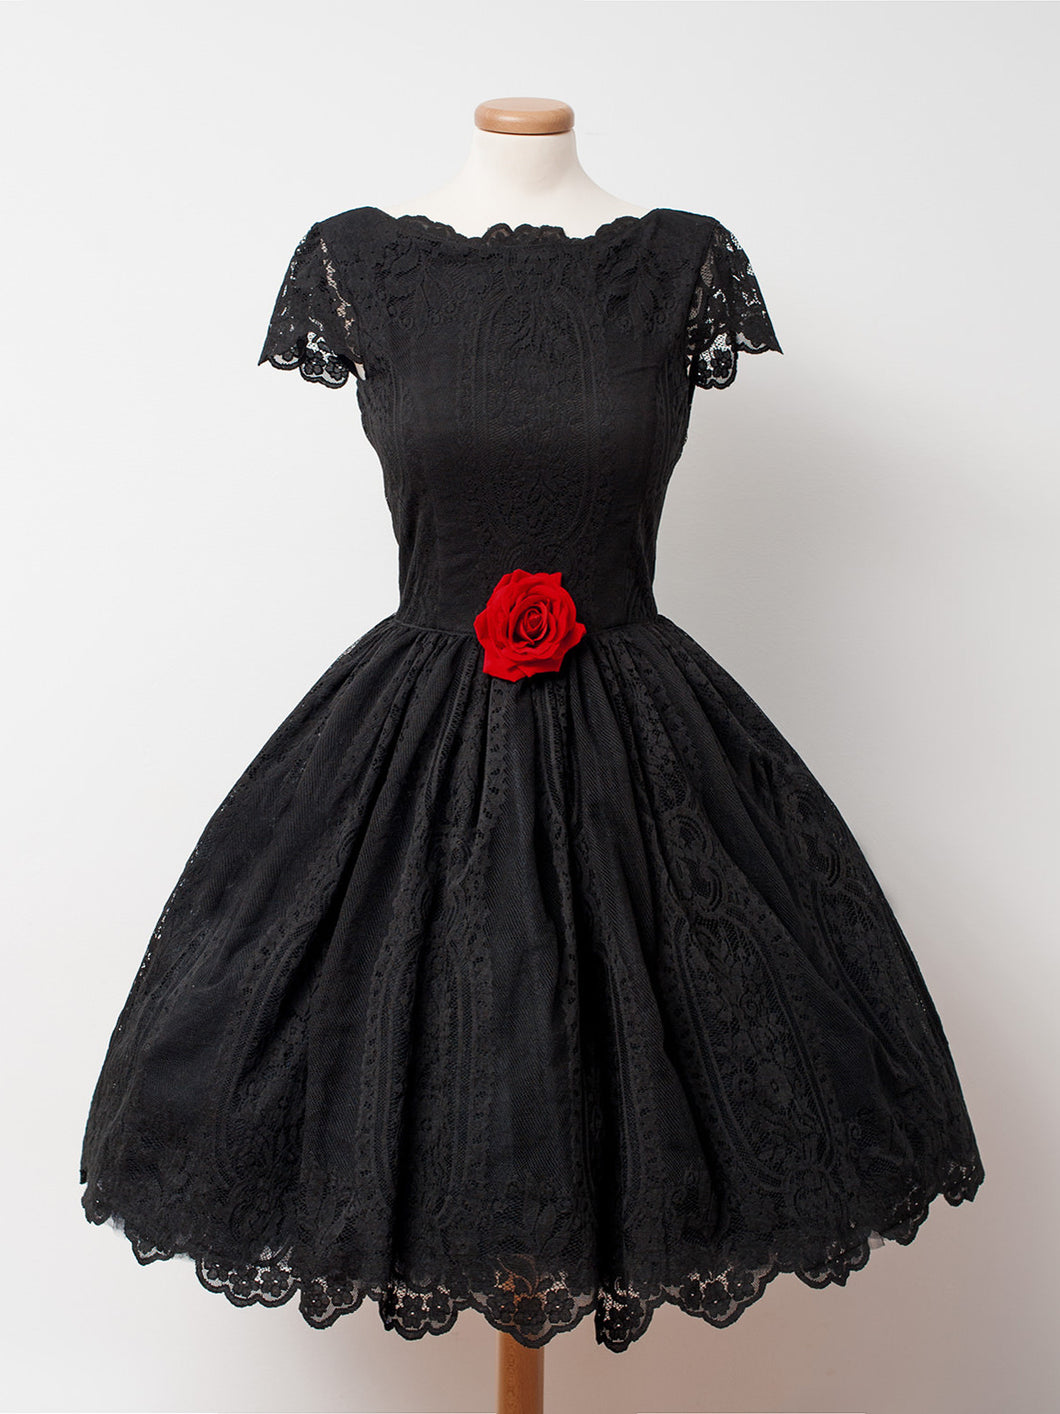 2017 Homecoming Dress Little Black Dress Short Prom Dress Party Dress JK140